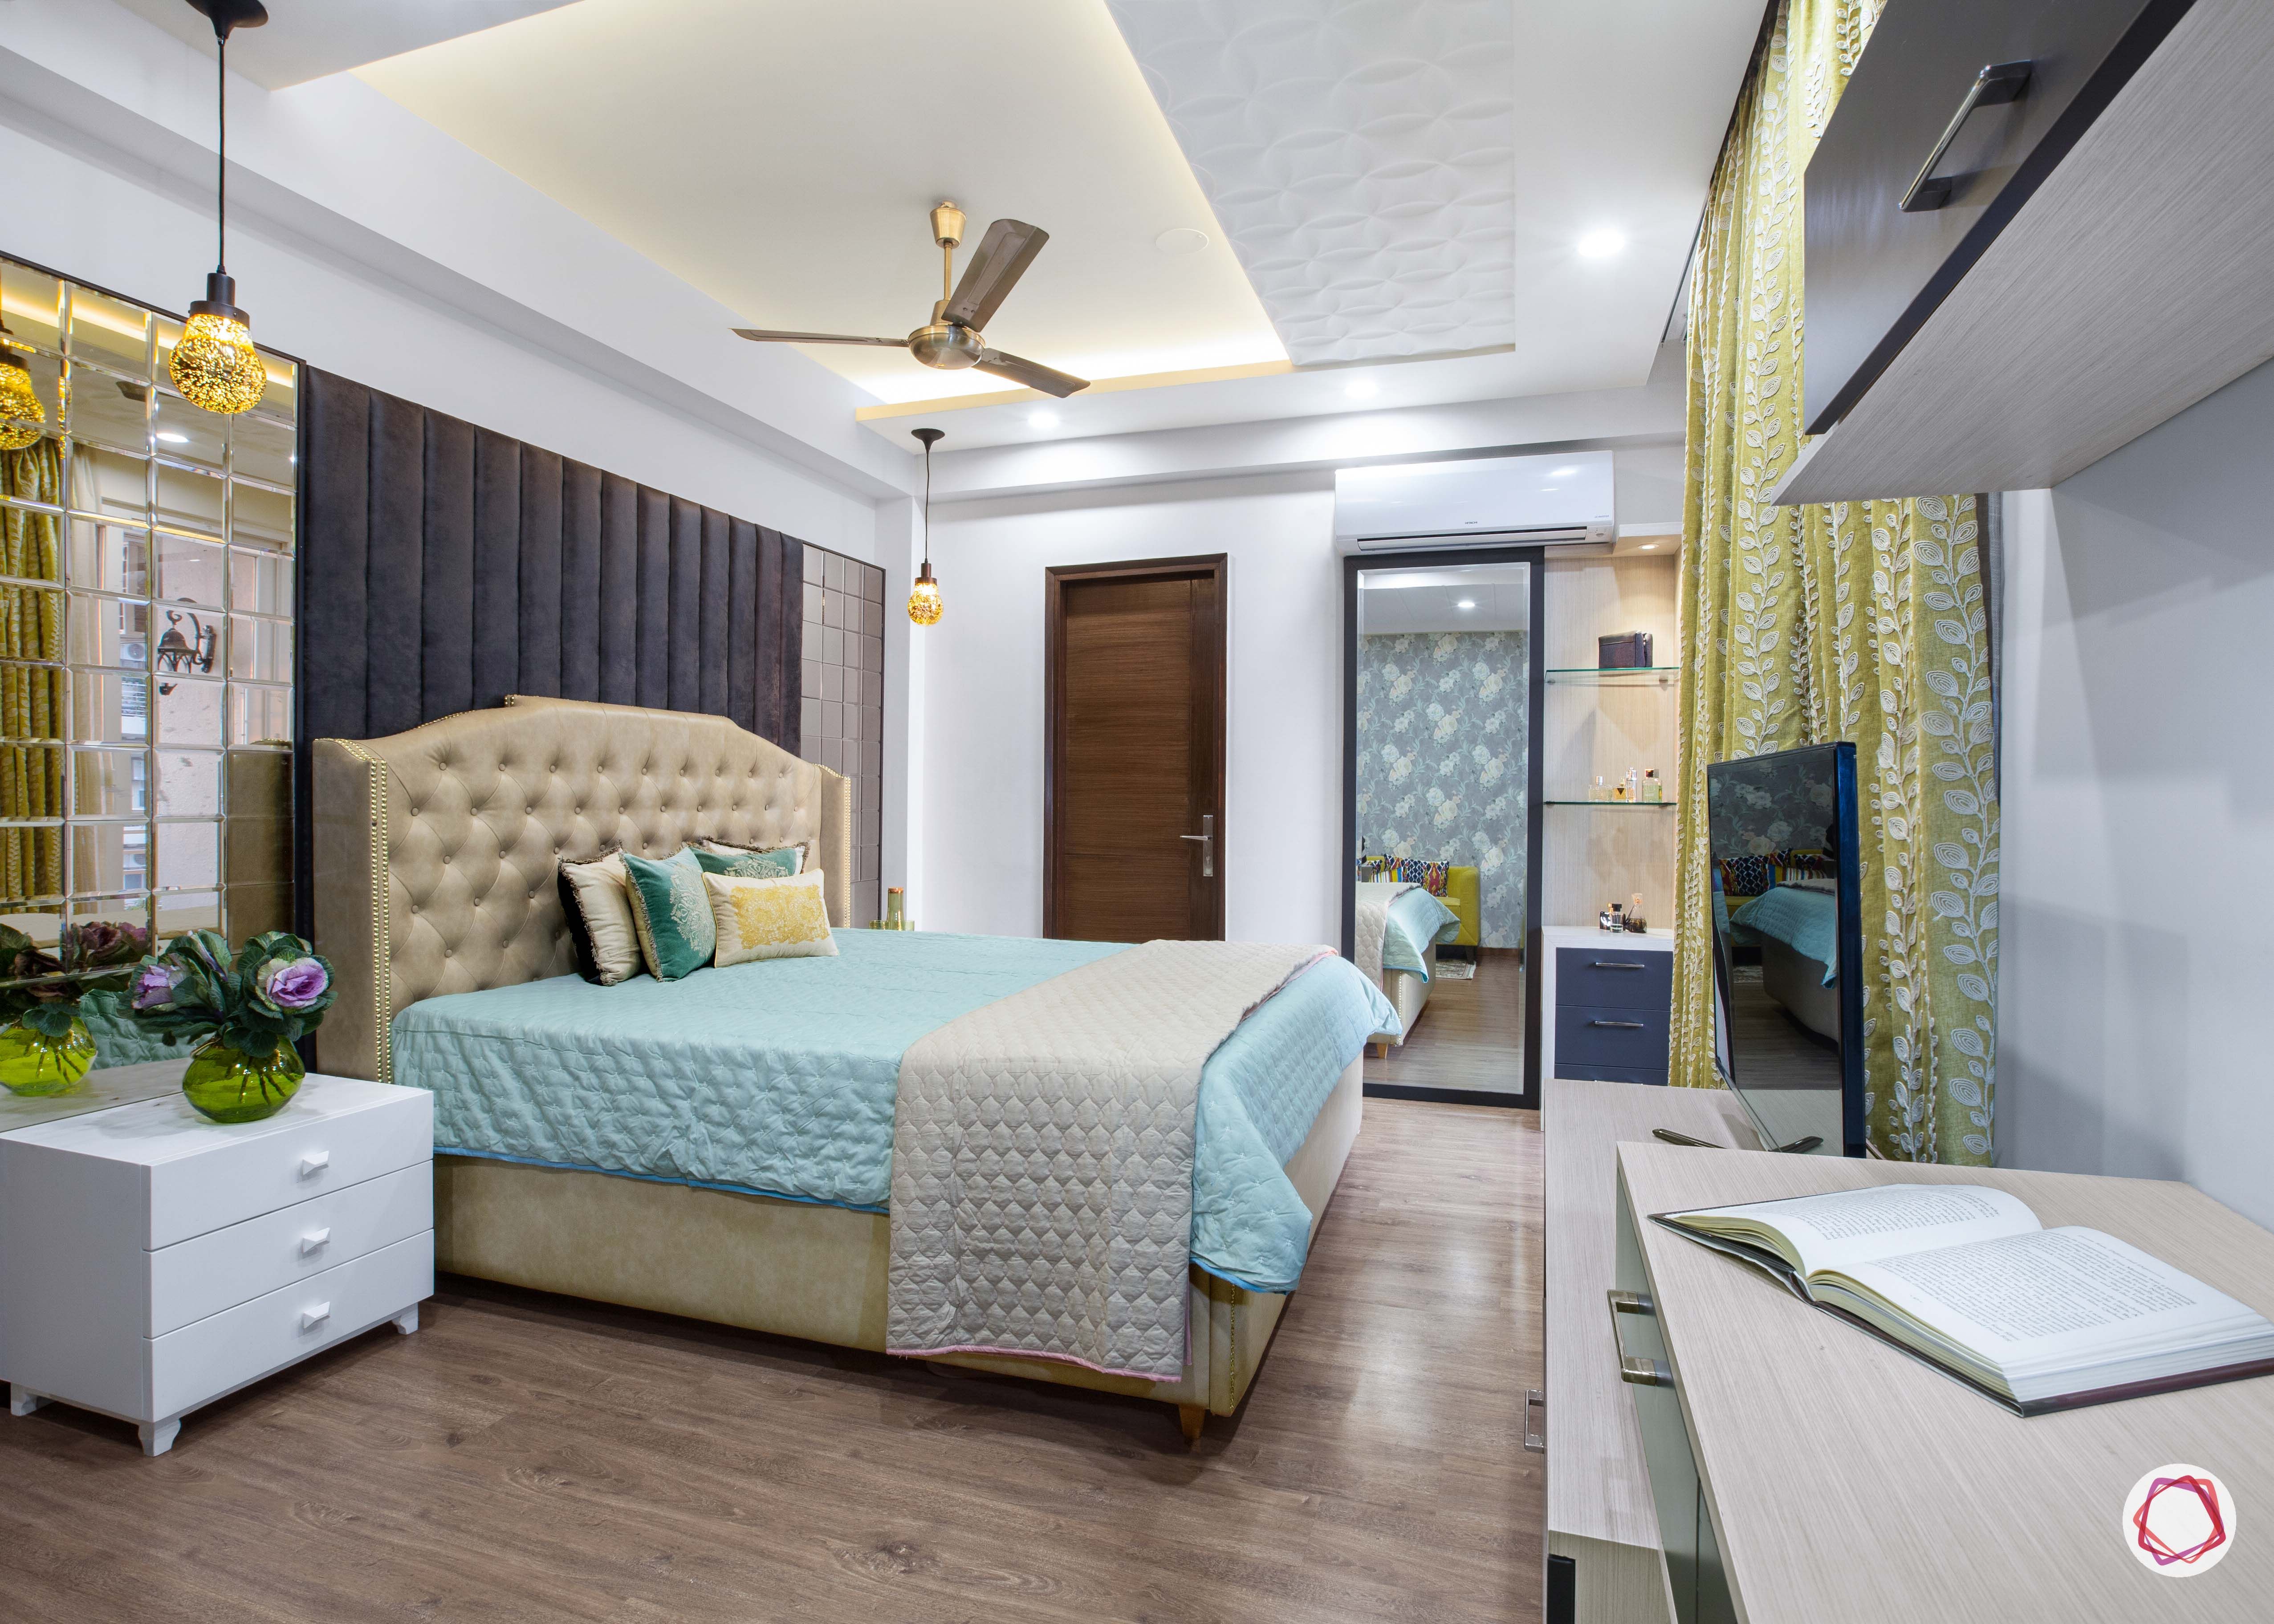 3 Bhk Flats In Noida Master Bedroom 